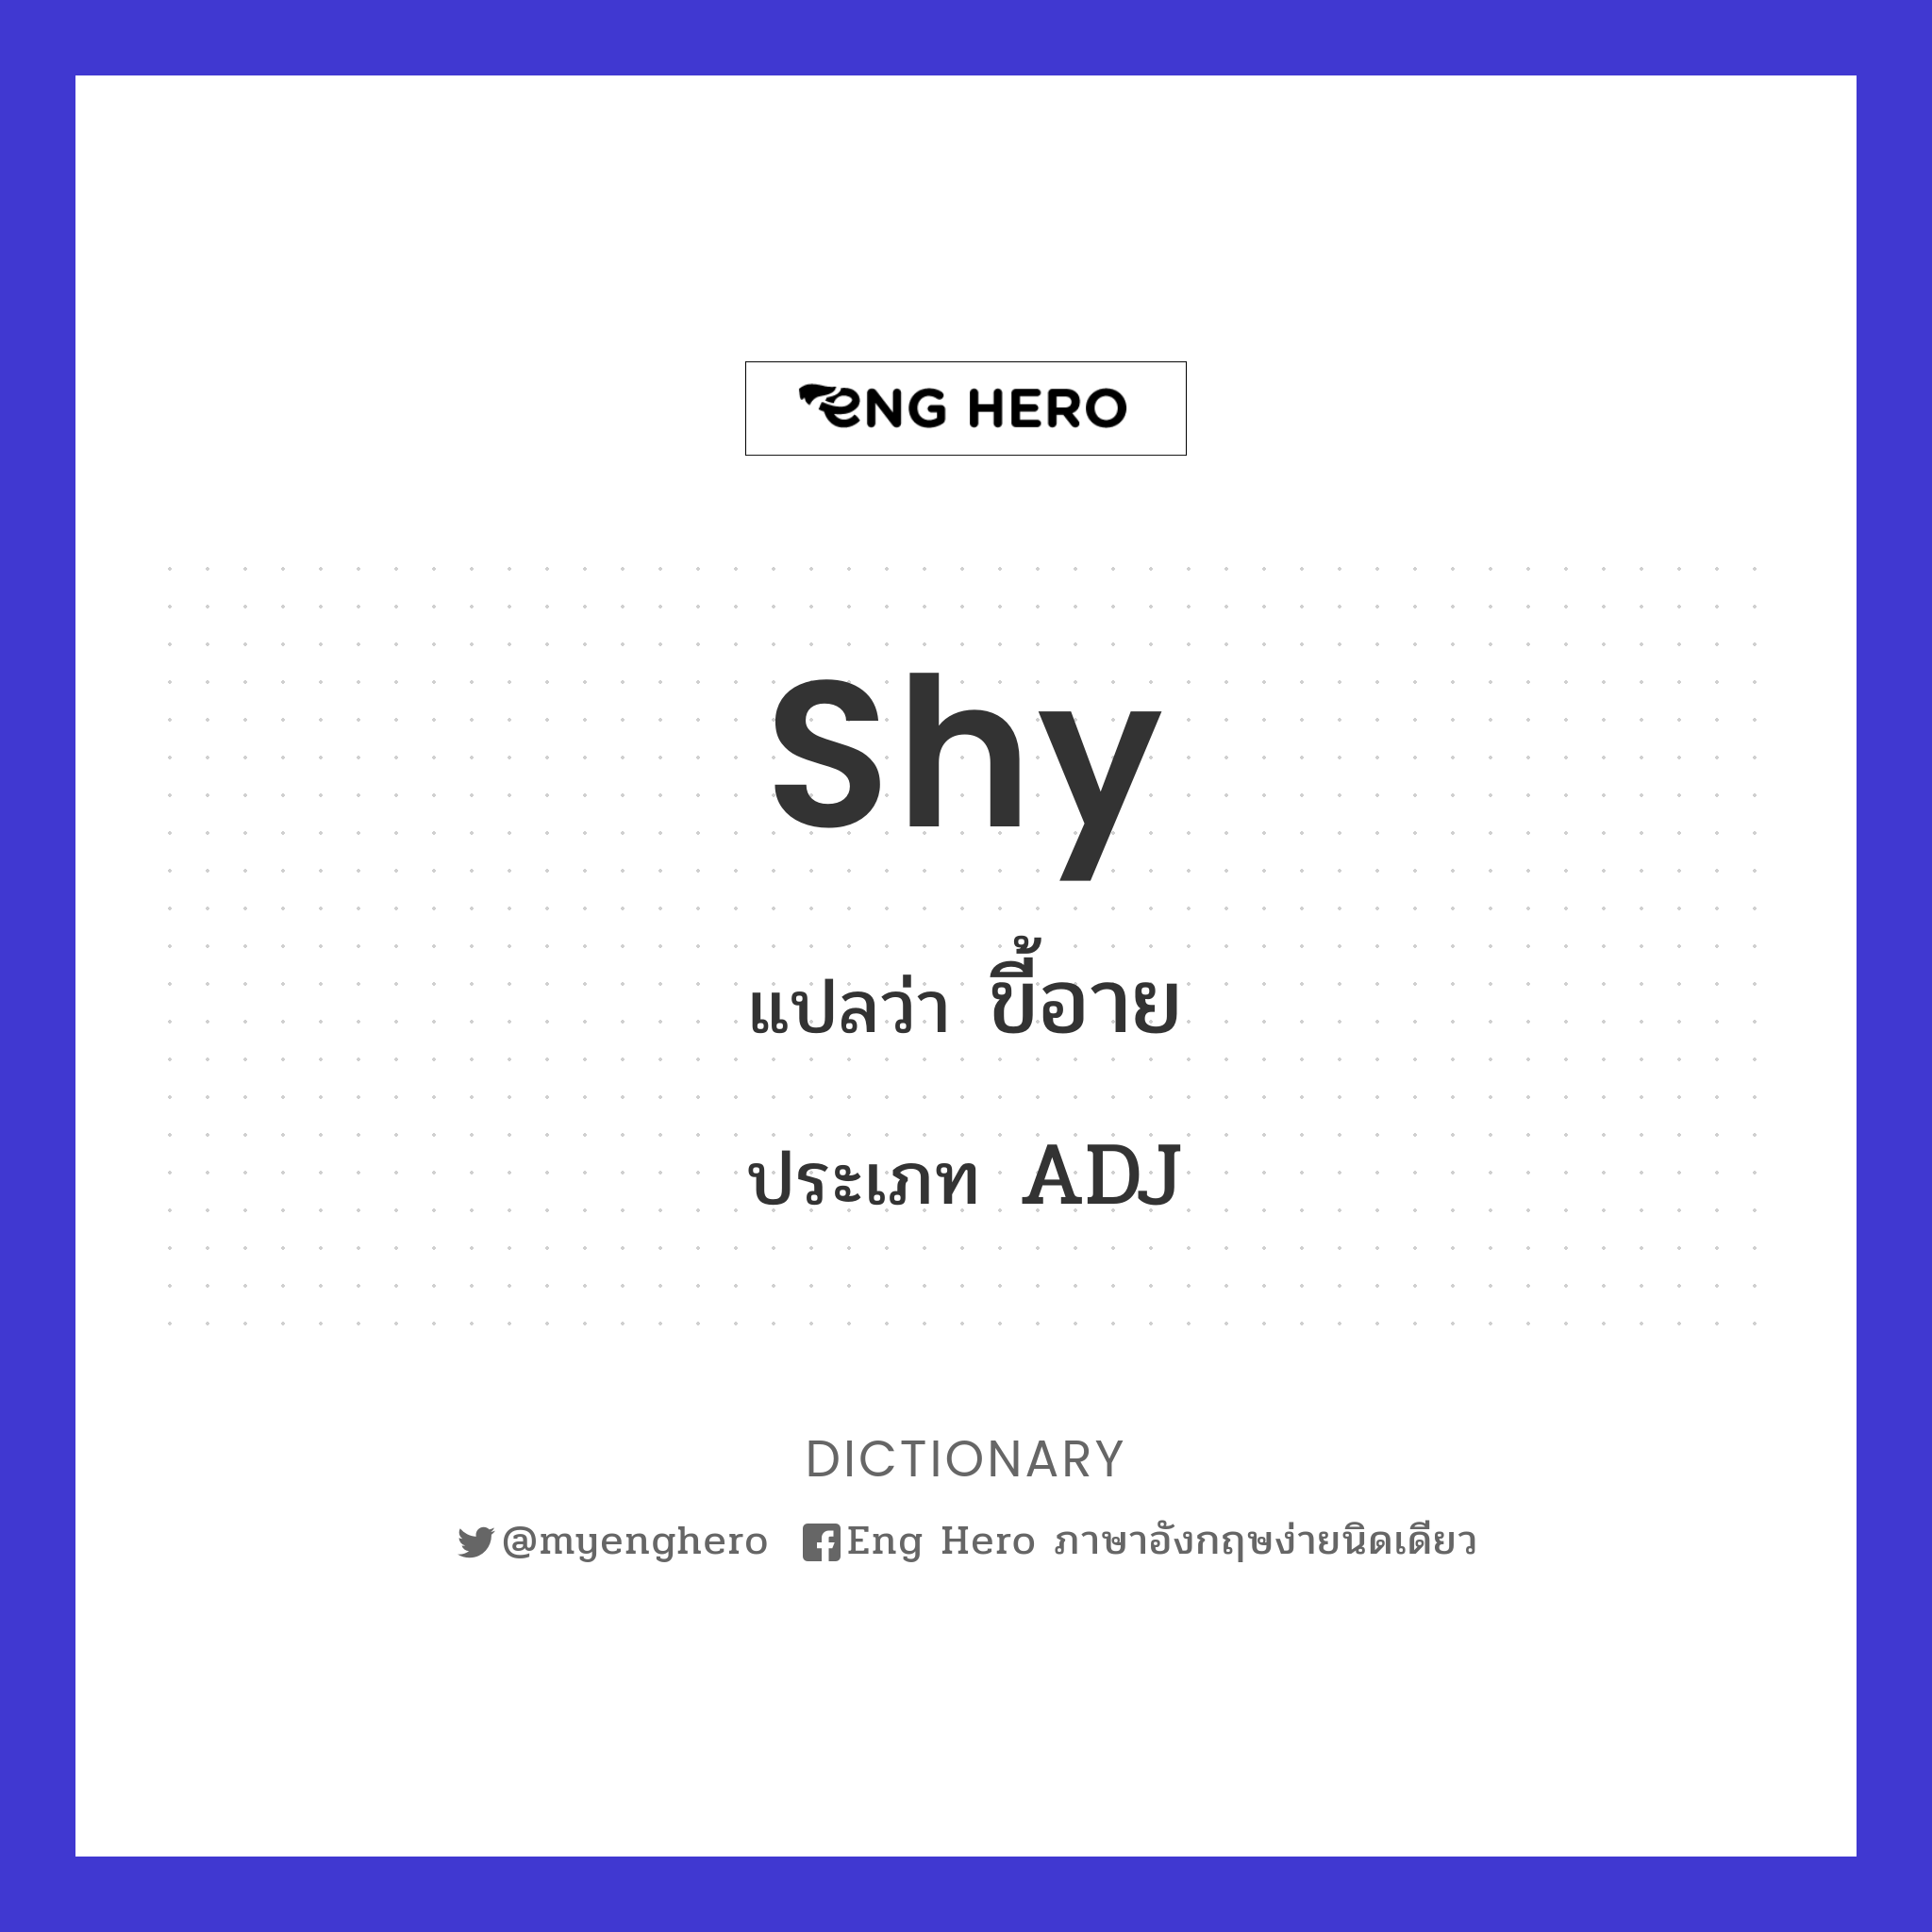 Shy แปลว่า ขี้อาย | Eng Hero เรียนภาษาอังกฤษ ออนไลน์ ฟรี